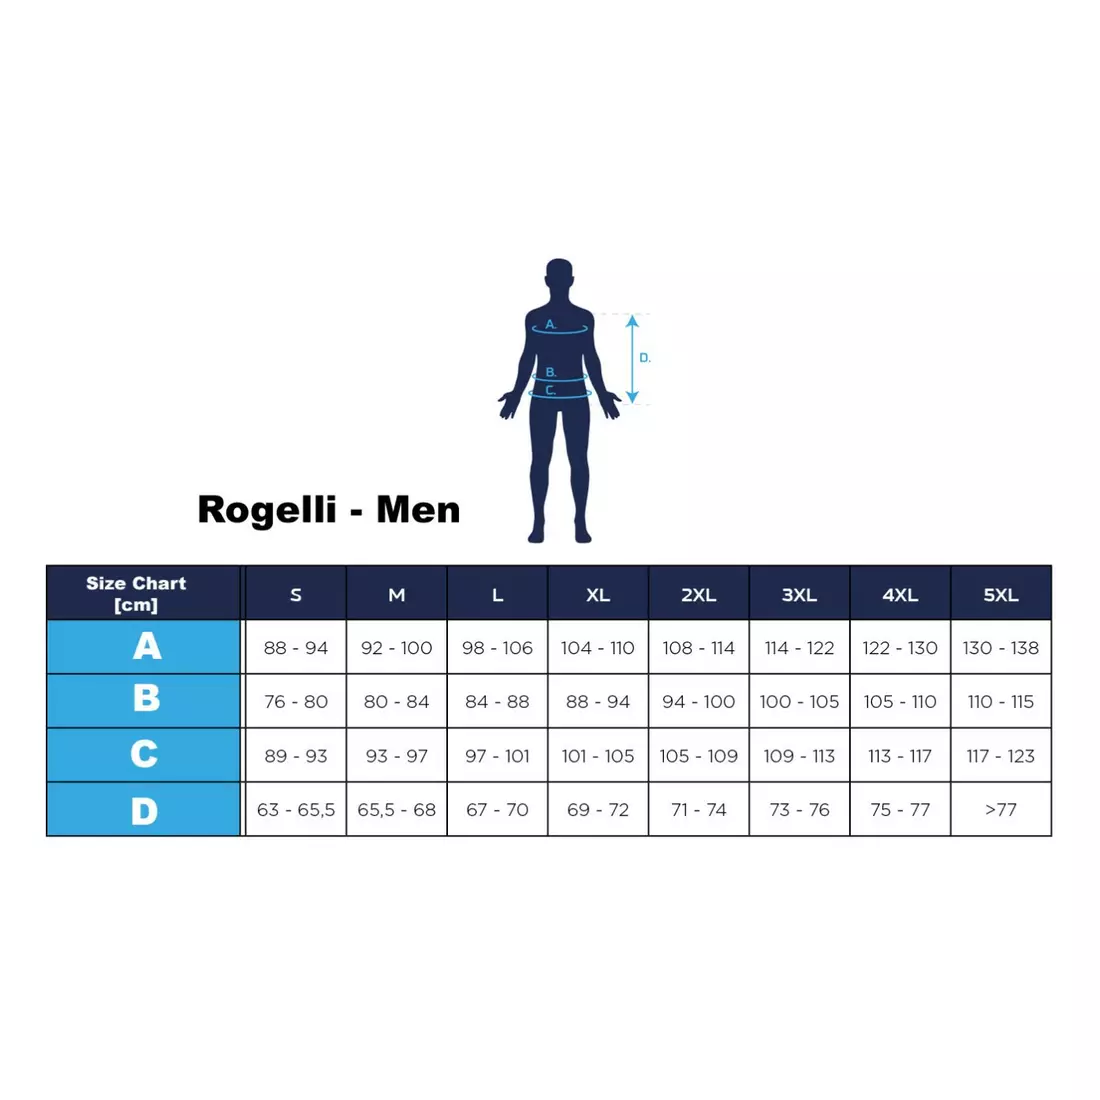 ROGELLI HERO Übergangs-Softshell-Fahrradjacke für Männer, schwarz orange